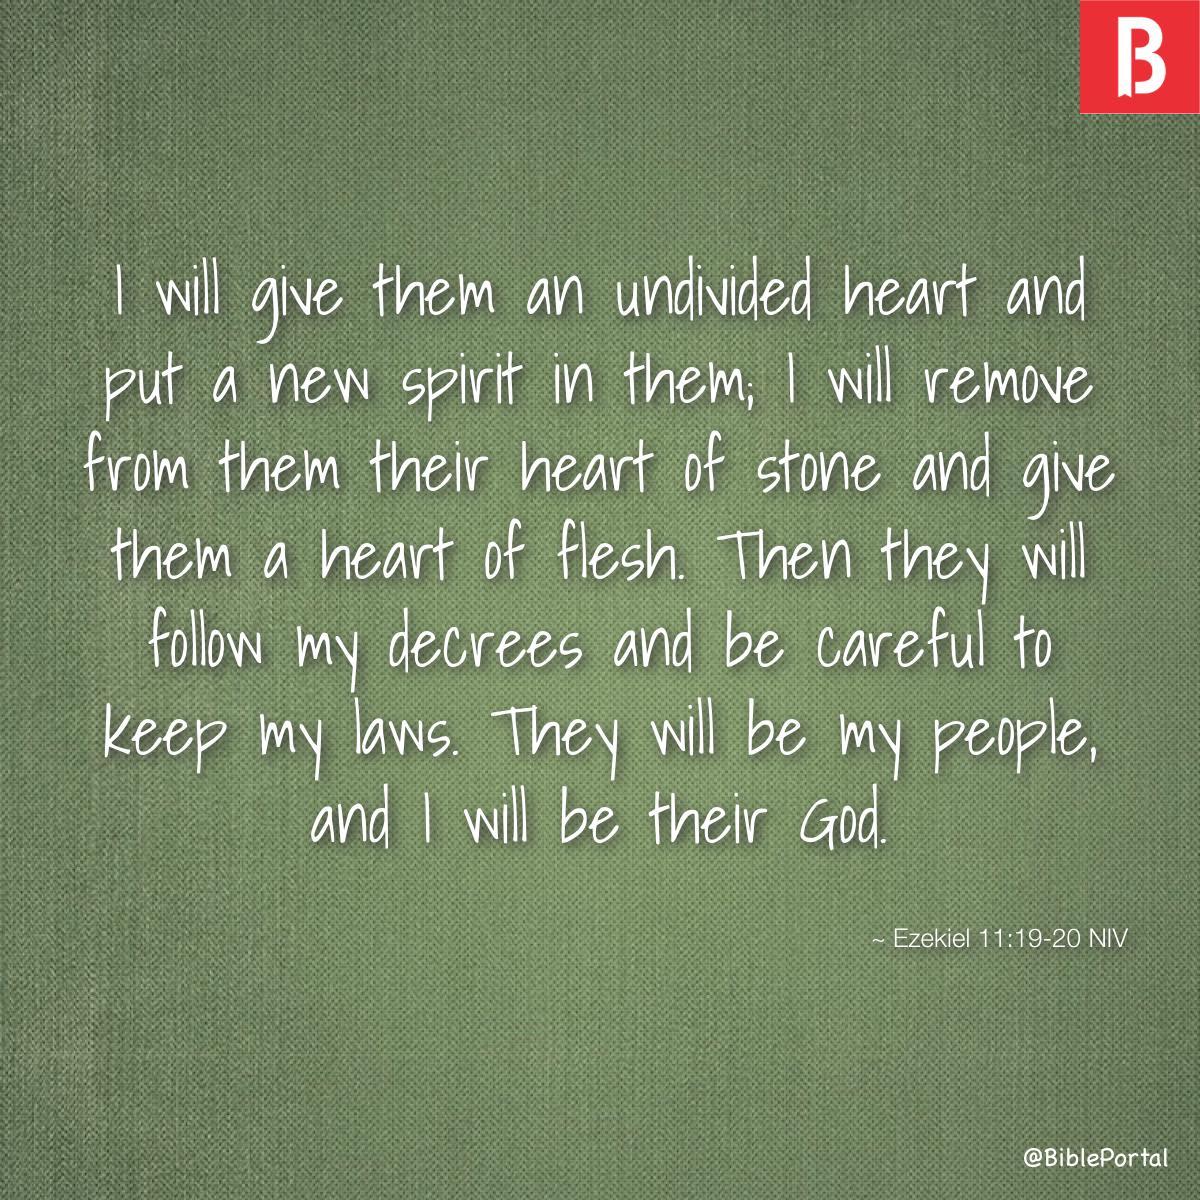 Ezekiel 11:19-20 NIV